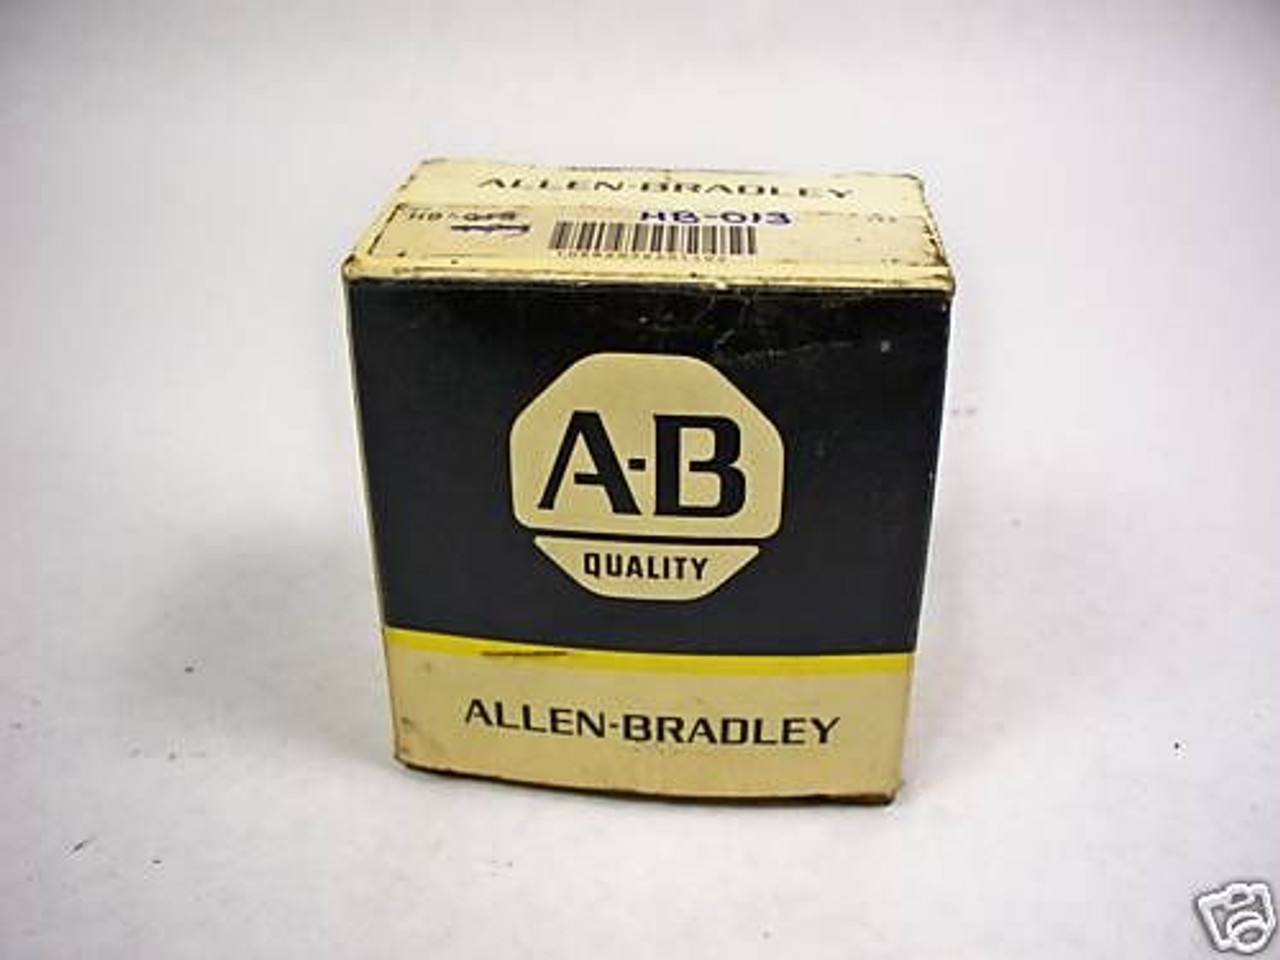 Allen-Bradley HB-013 24V 60Hz Coil ! NEW !